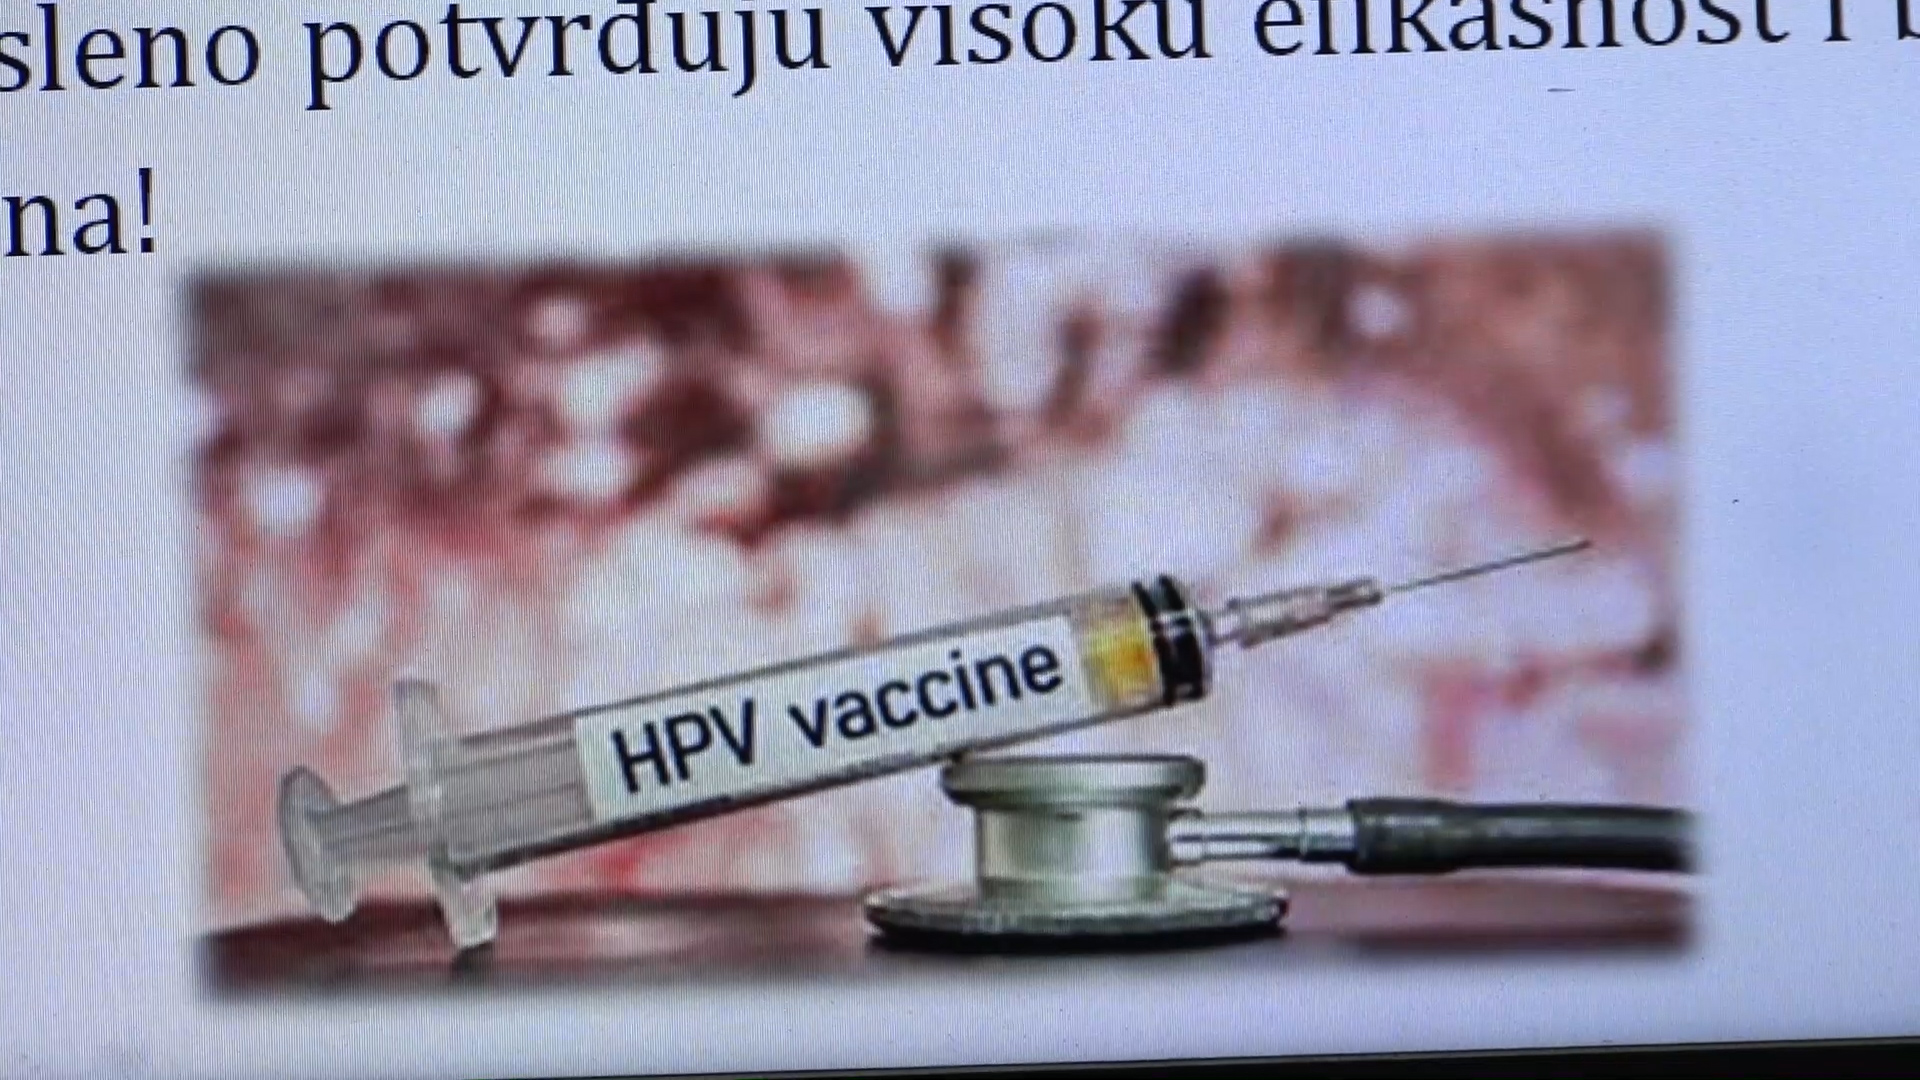 Najavljena Nedelja otvorenih vrata za vakcinaciju protiv HPV virusa